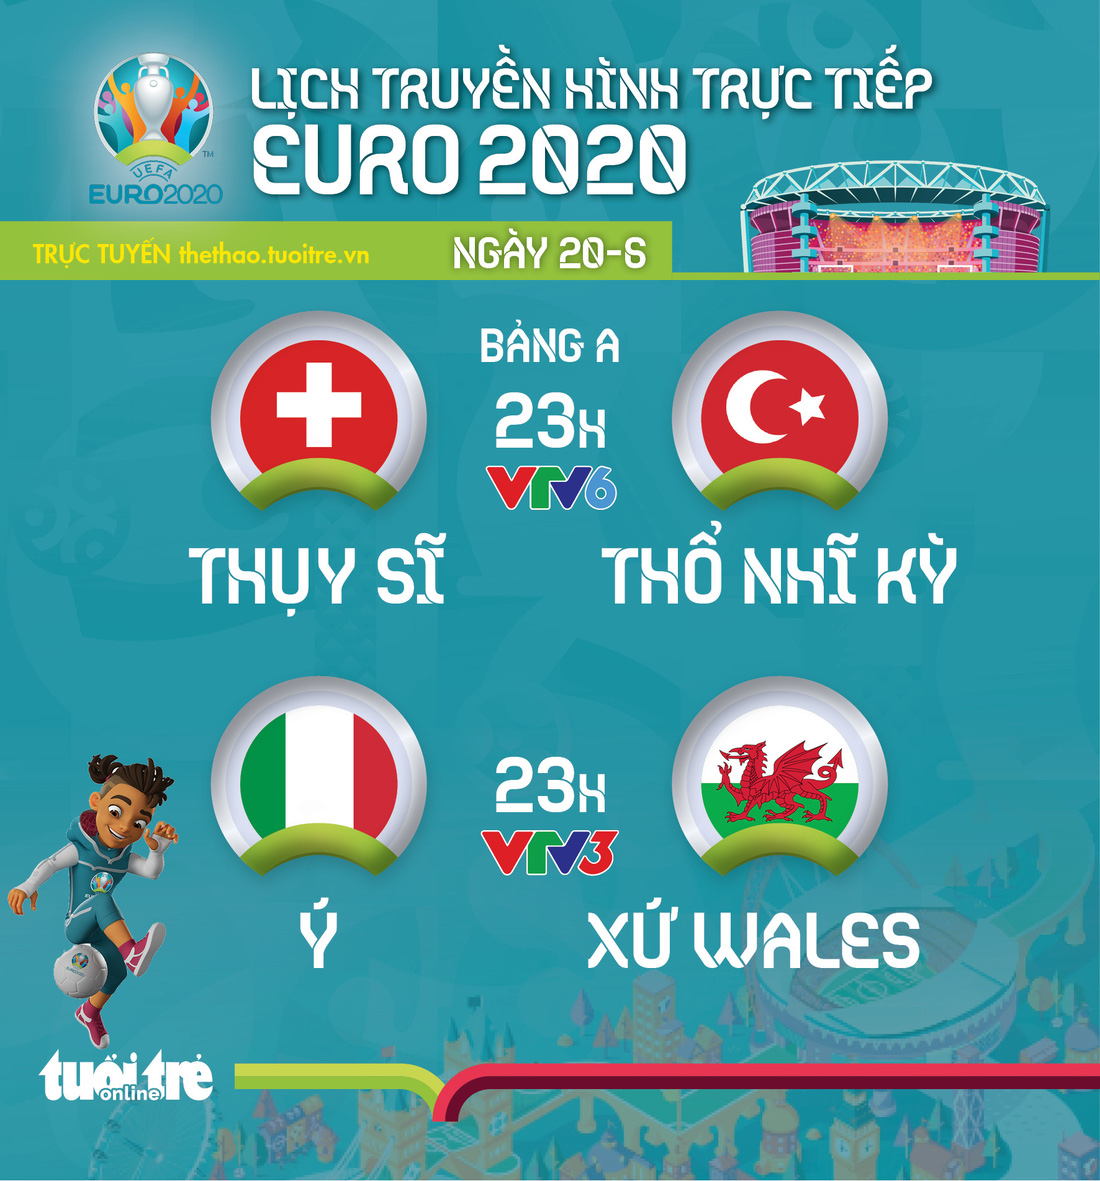 Lịch thi đấu Euro 2020 ngày 20-6: Thụy Sỹ- Thổ Nhĩ Kỳ, Ý - Xứ Wales - Ảnh 1.